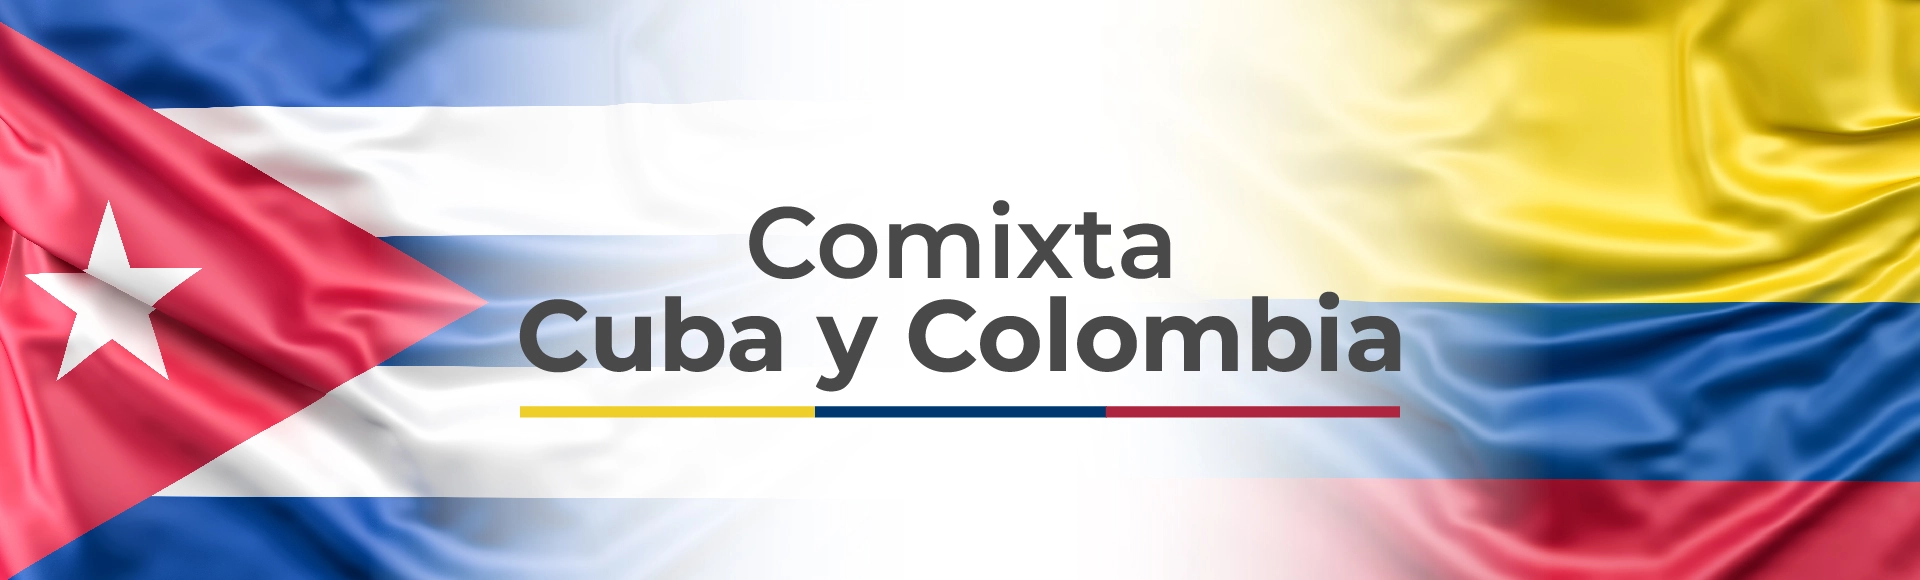 En la izquierda la bandera de Cuba, A la derecha la bandera de Colombia en el medio dice Comixta Colombia y Cuba